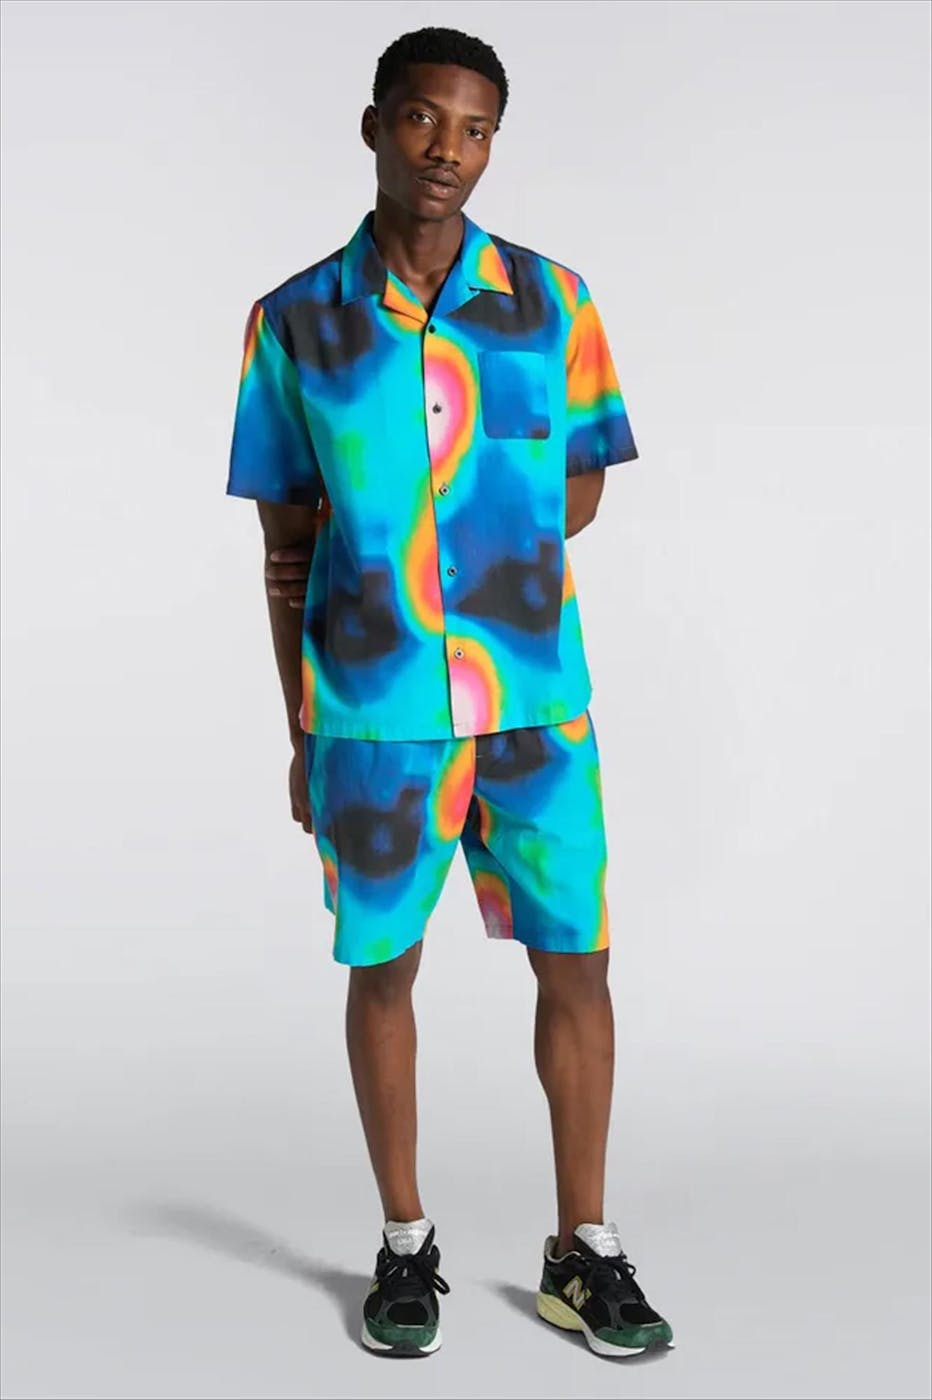 Edwin - Multicolour Terahertz hemd